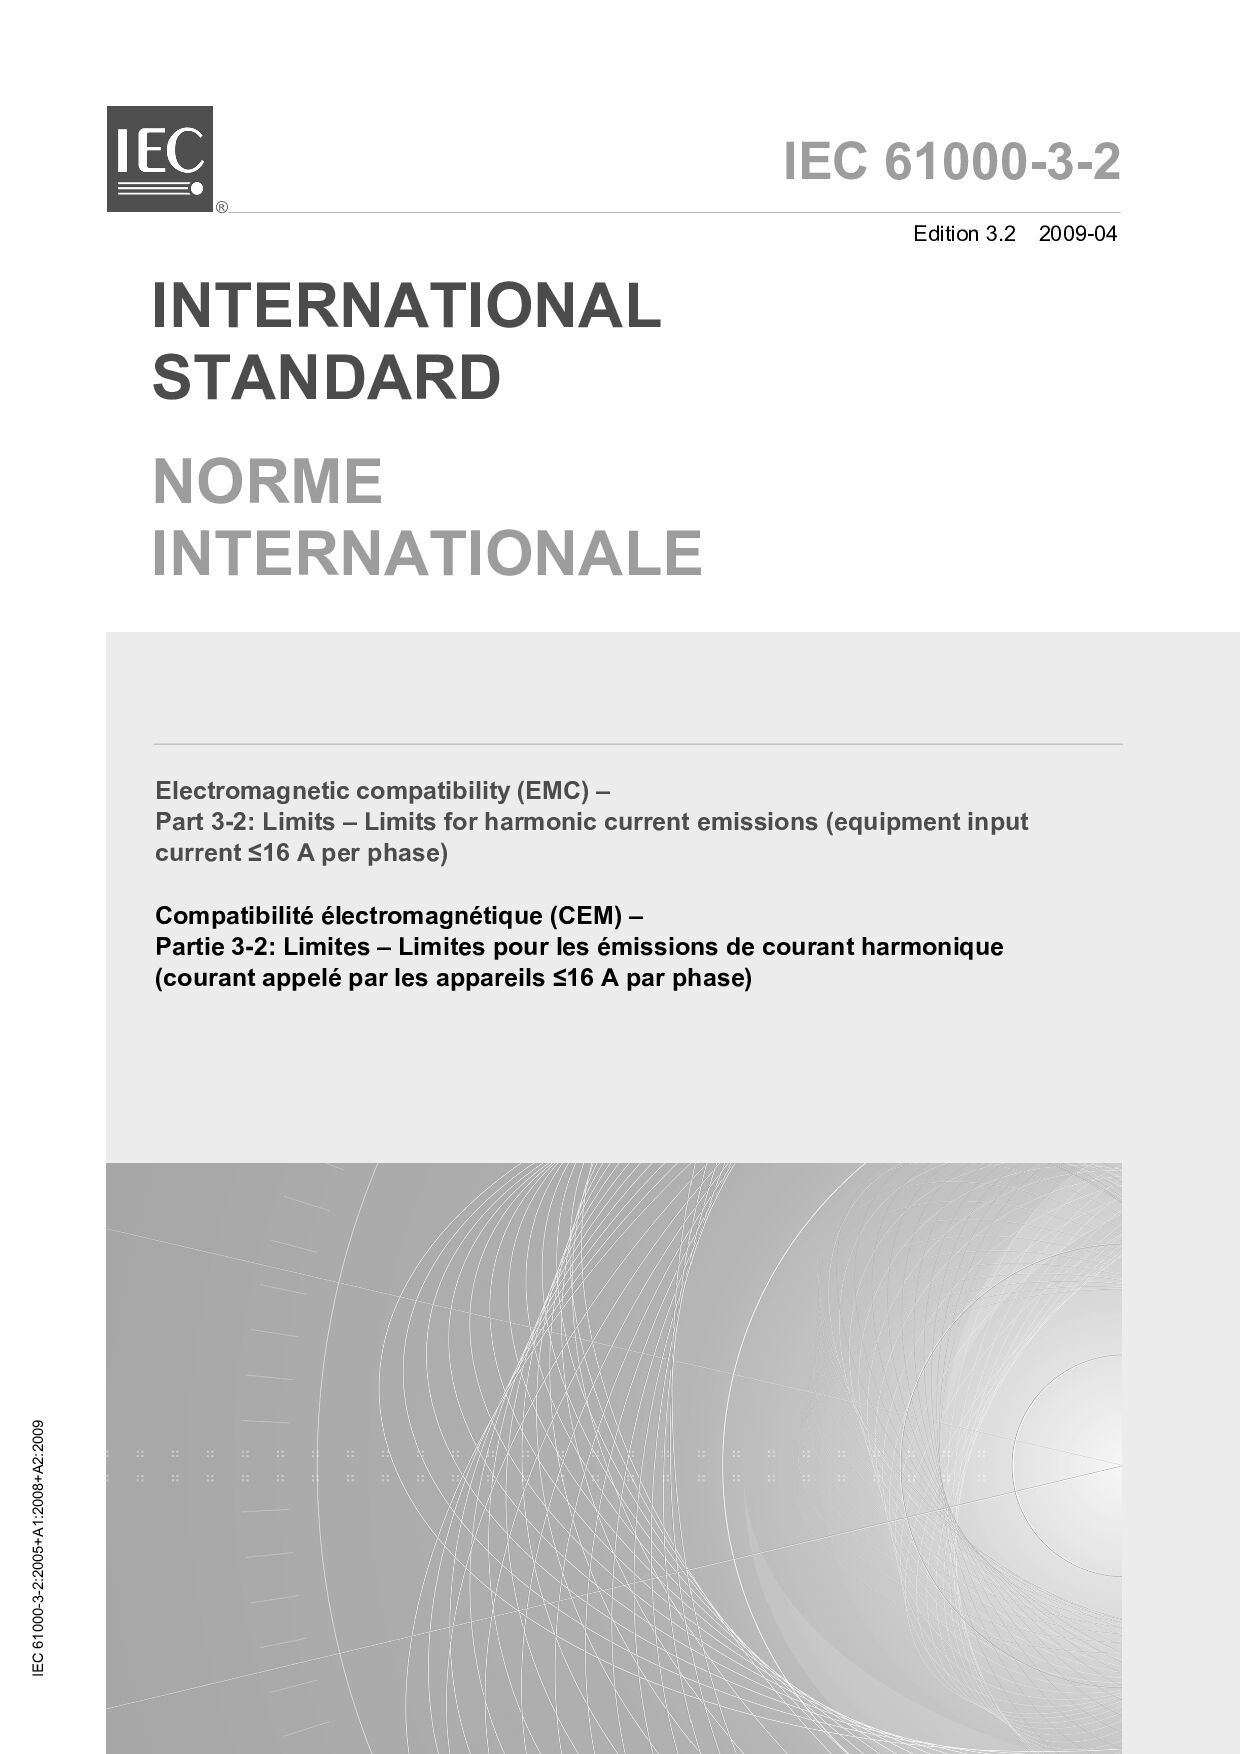 IEC 61000-3-2:2009封面图